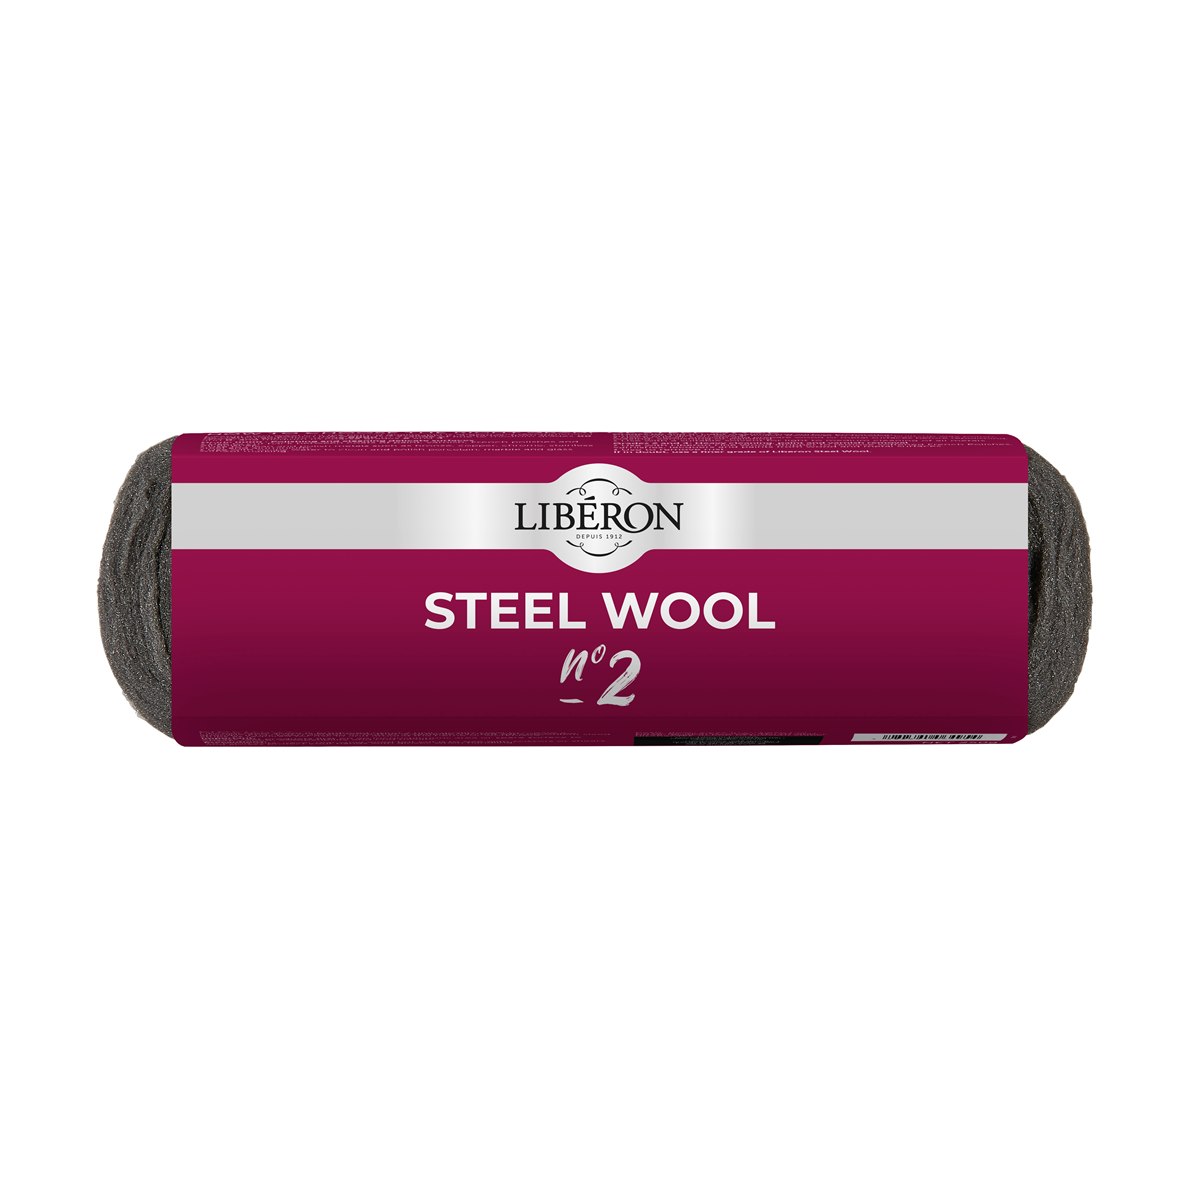 Liberon Oil Free Steel Wool